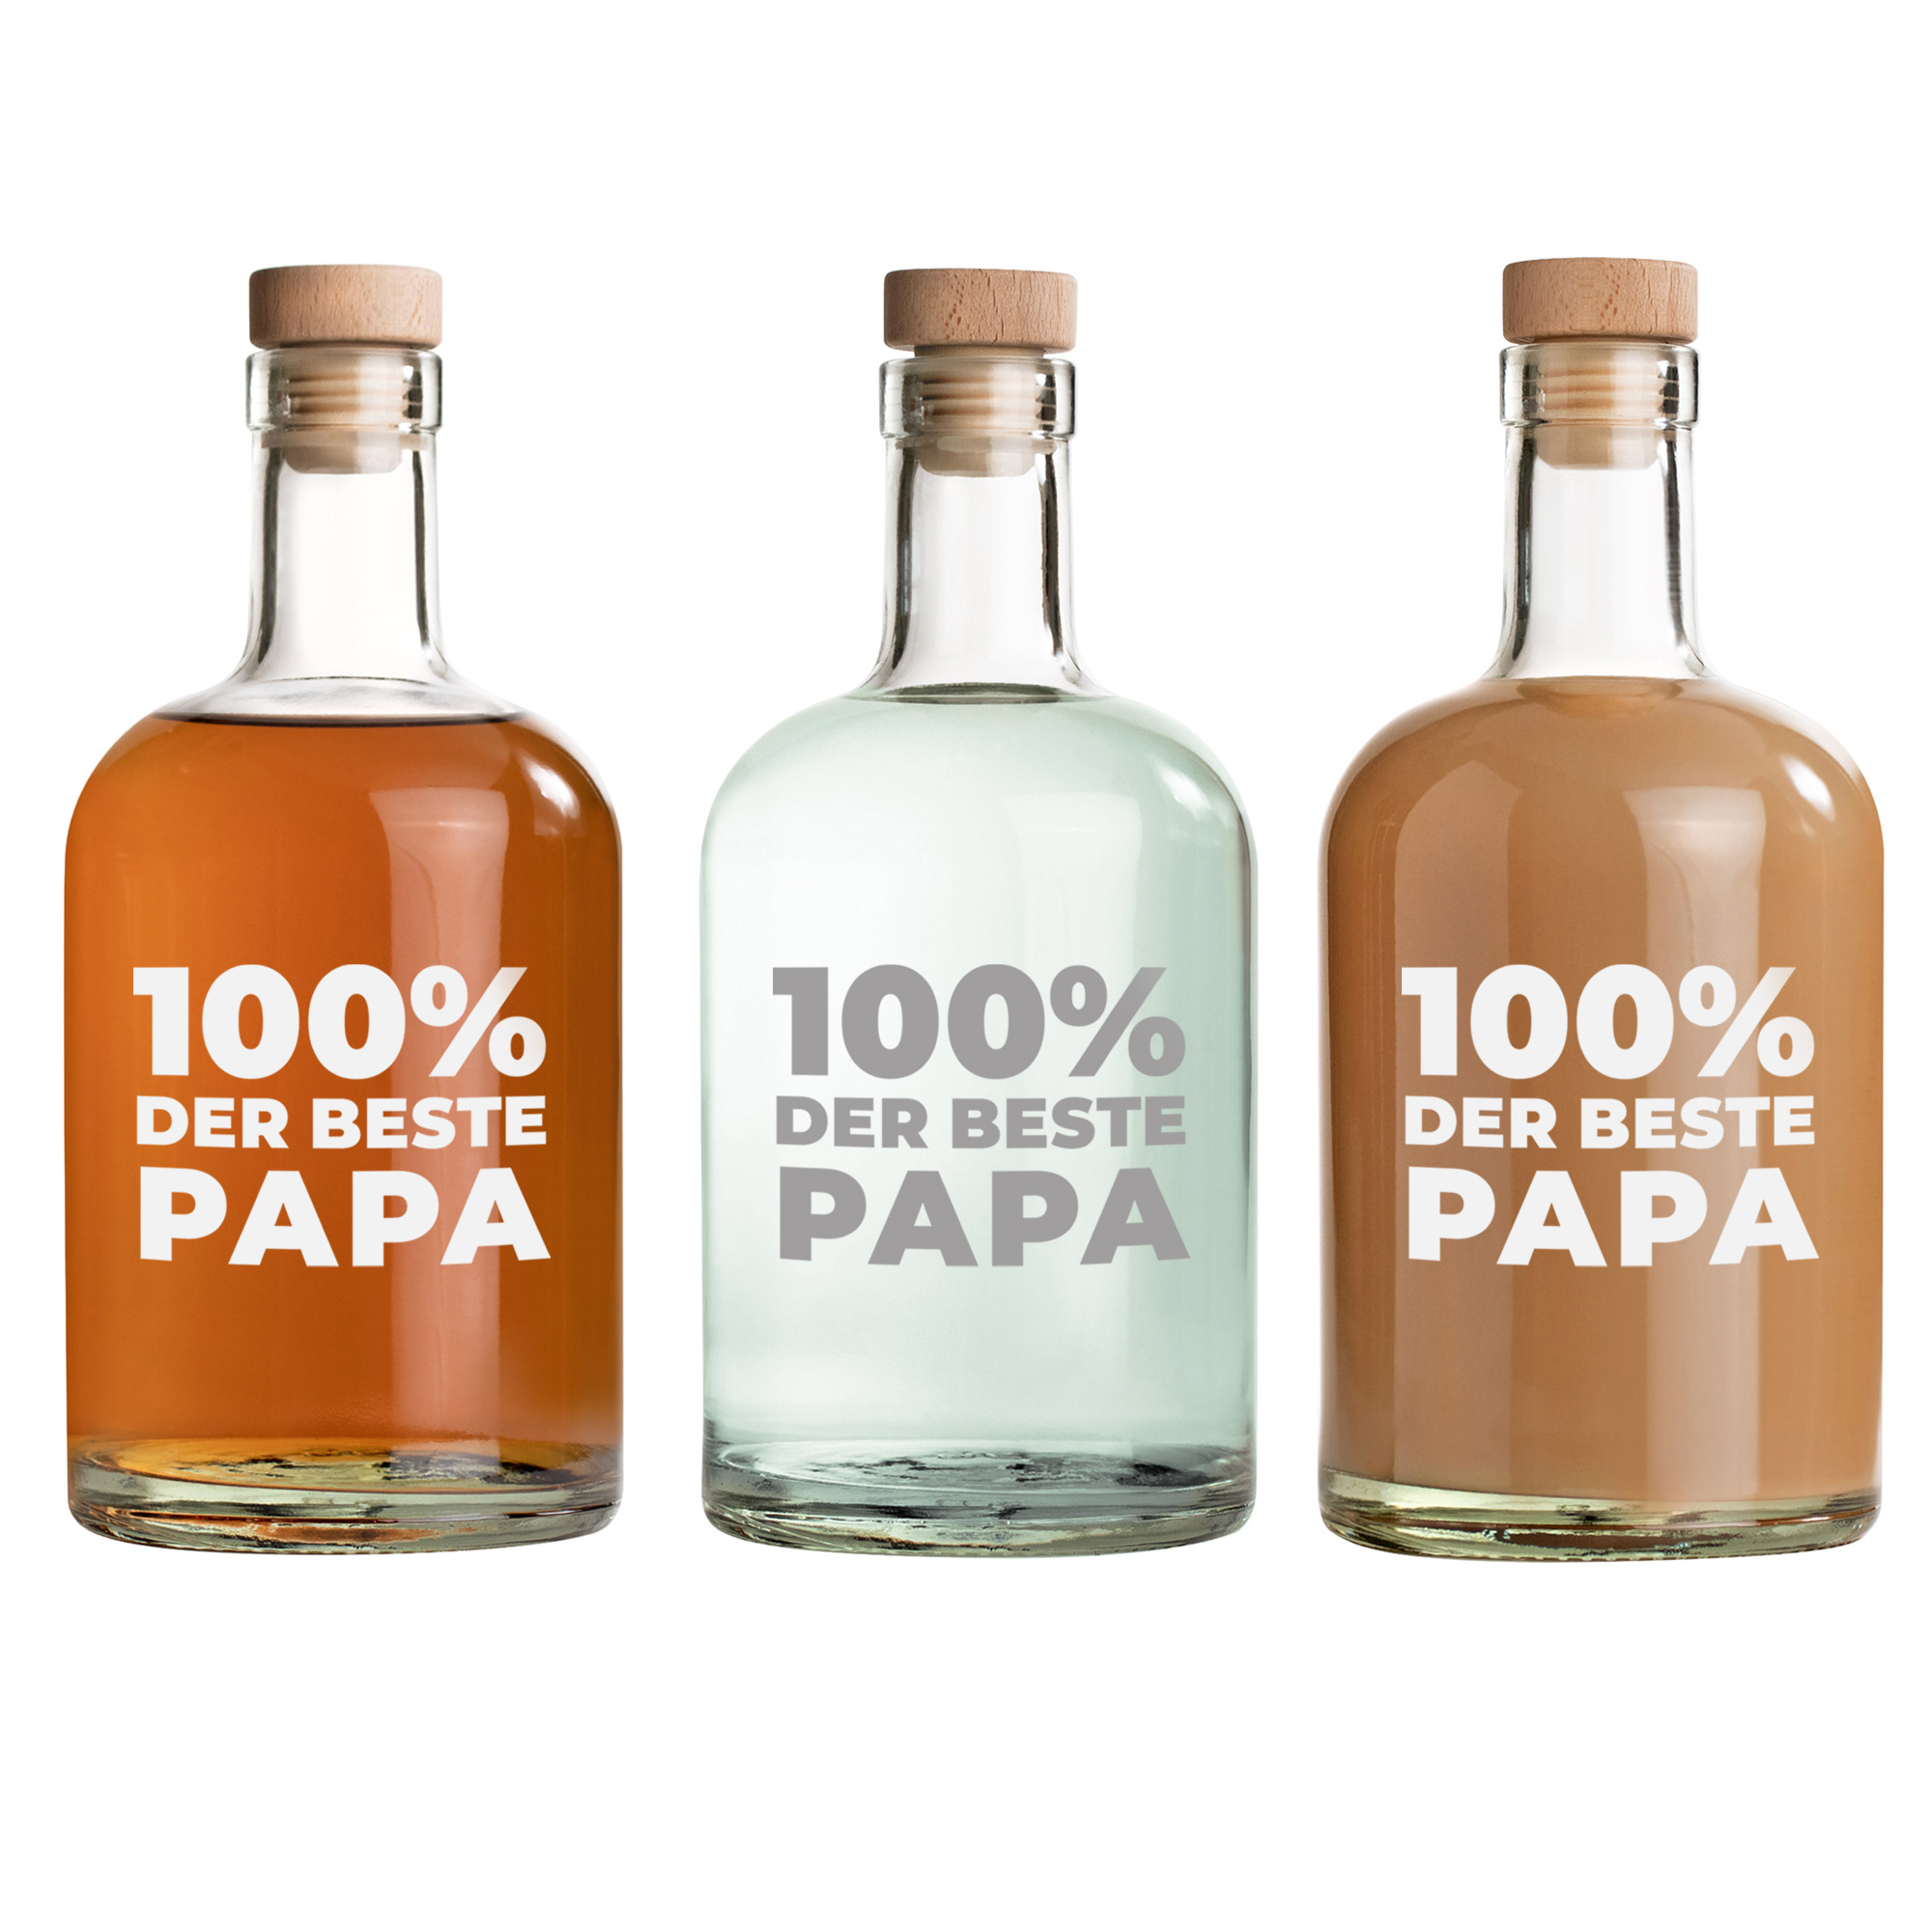 Glaskaraffe als Vatertagsgeschenk, Wasserflasche mit Gravur für Papa, Gravierte Gin Flasche zum Befüllen, Deko Flasche mit Korken